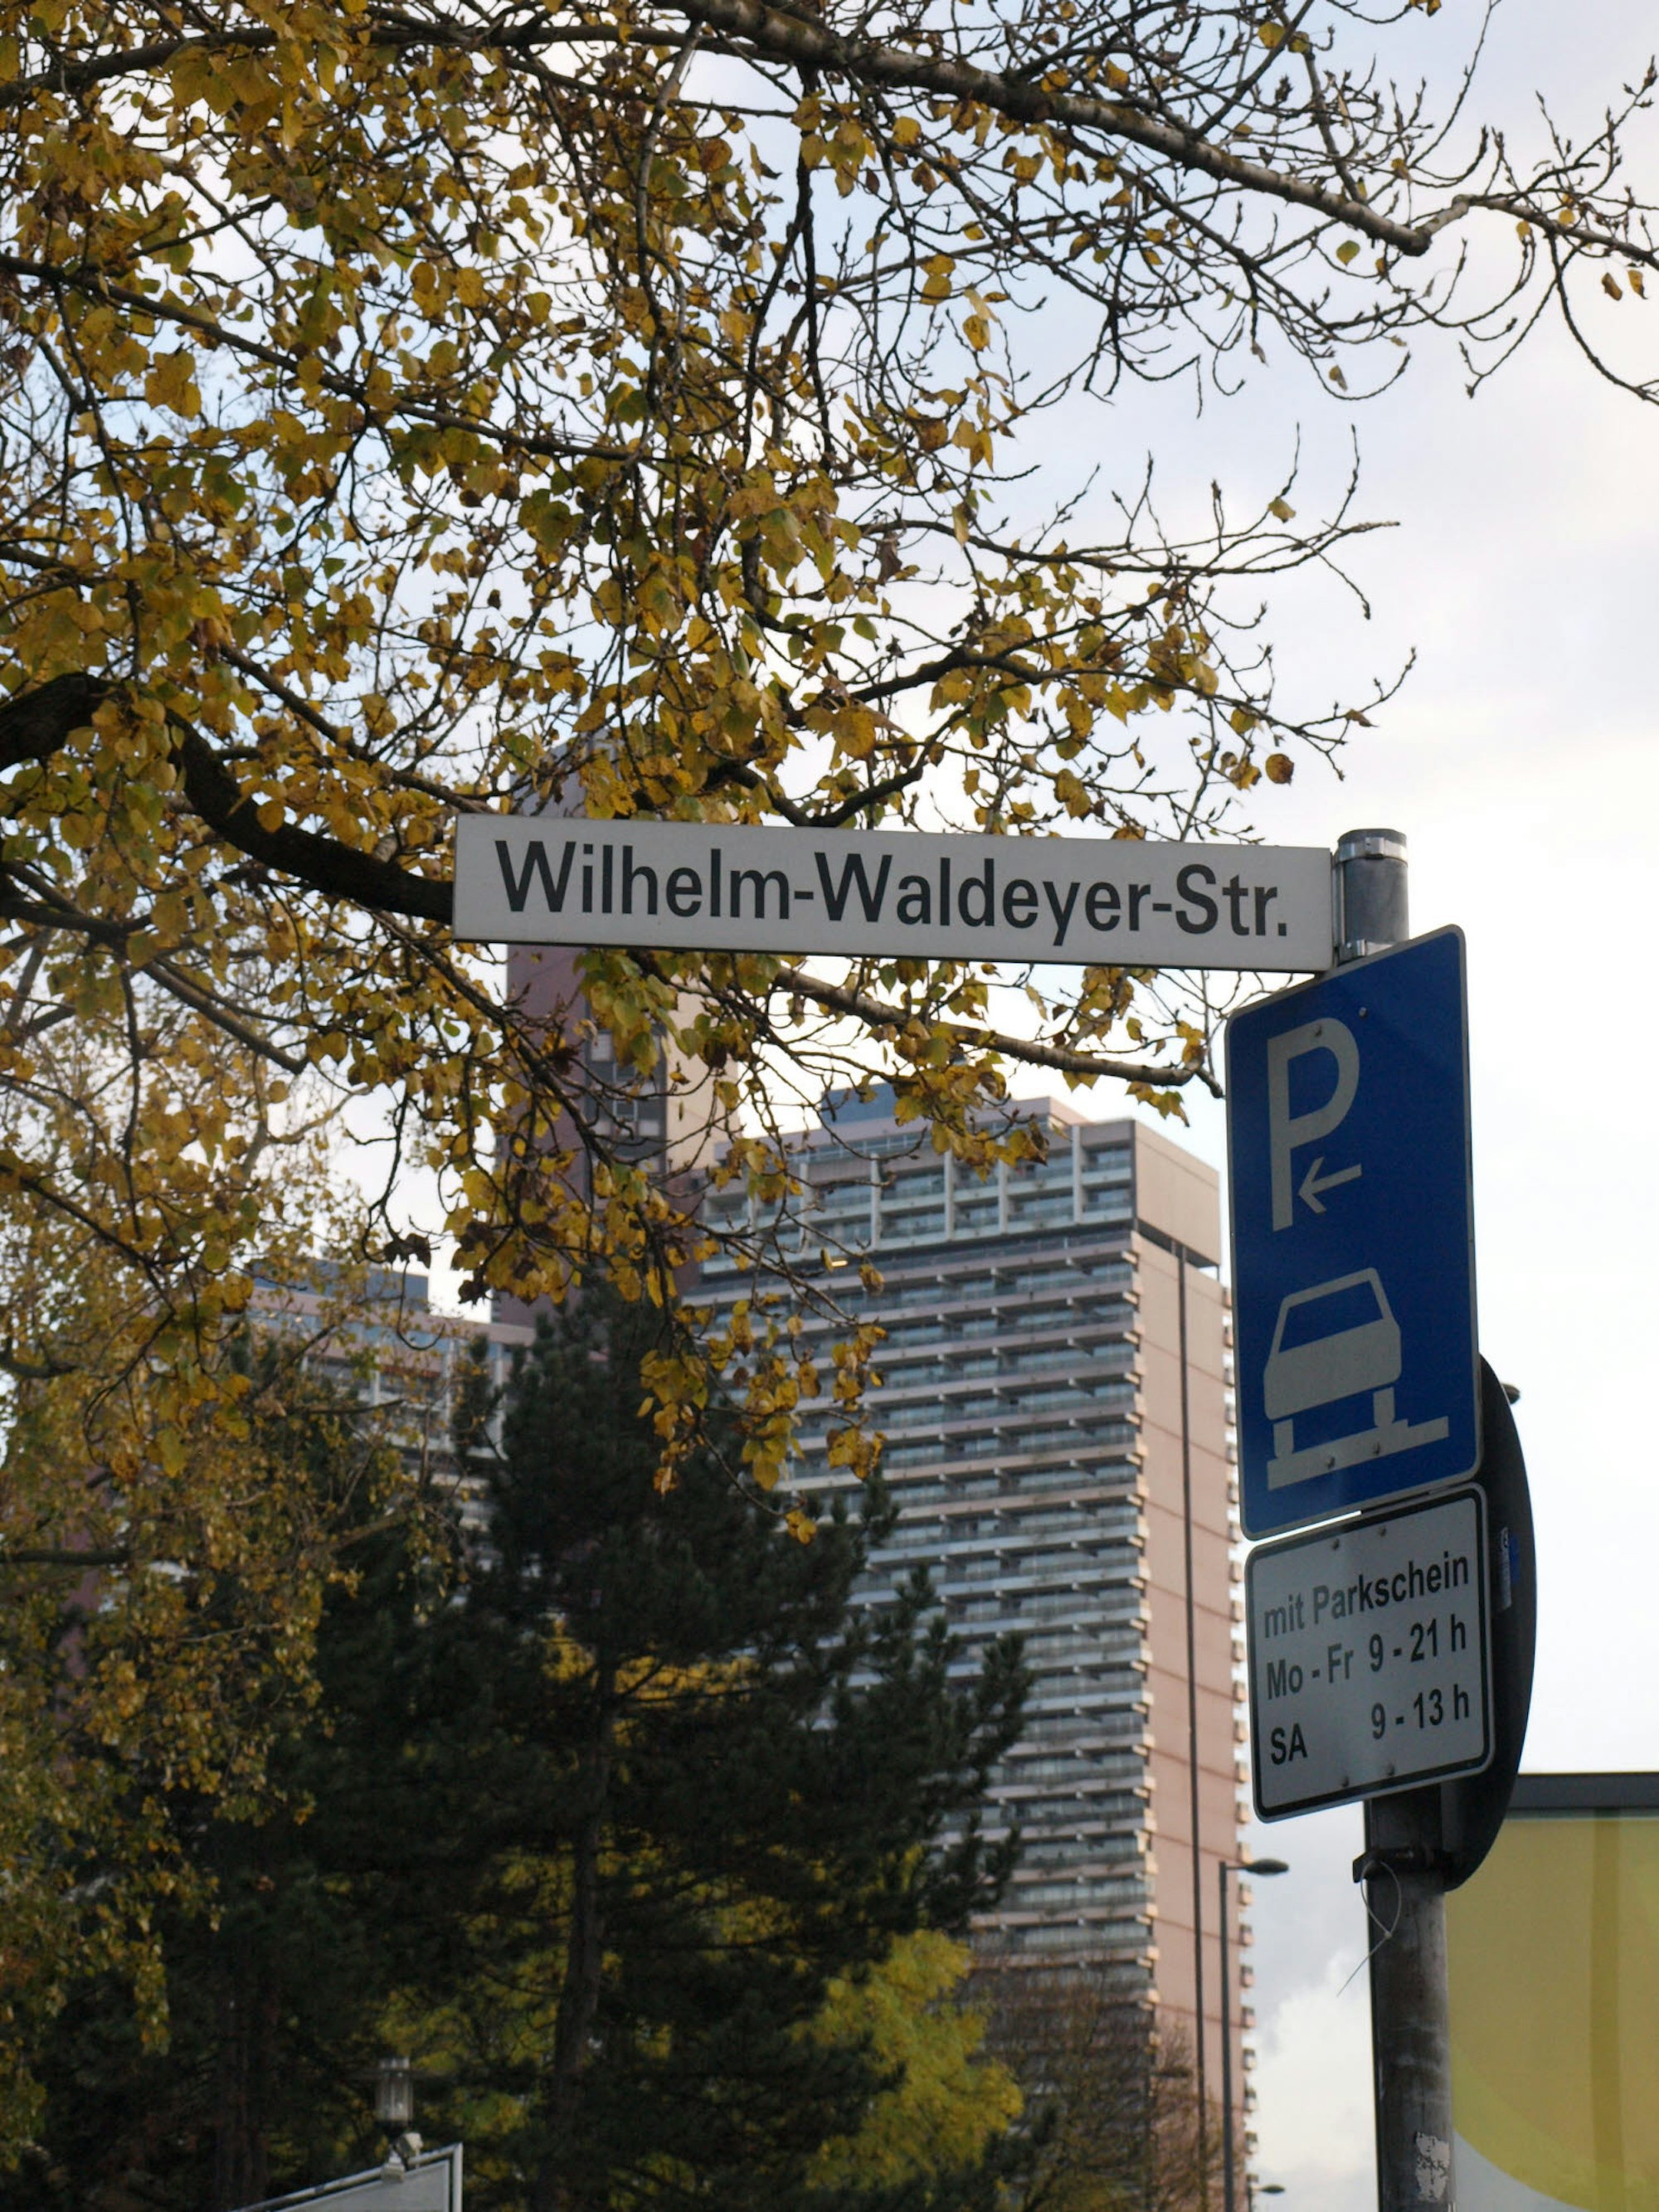 Nach Wilhelm Waldeyer, dem Mediziner und Spezialisten für Anatomie, ist eine kleine Straße benannt, die von der Universitätsstraße abgeht und in die Zülpicher mündet.